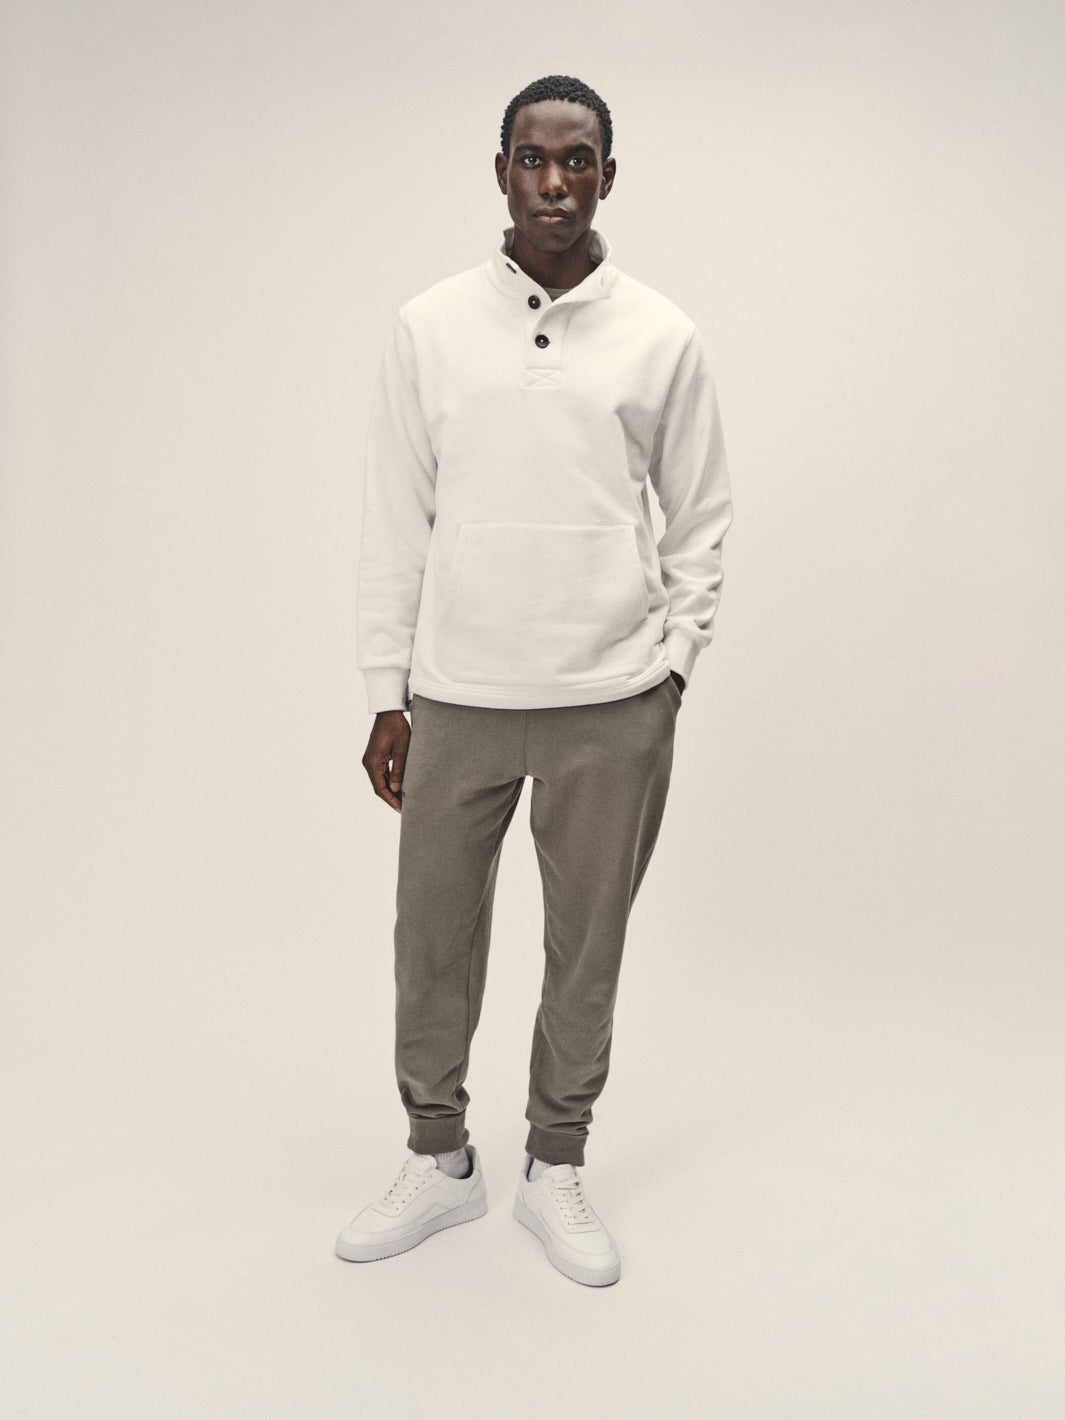 Herren Stehkragen Sweatshirt geknöpft Farbe off white regular fit reine Bio Baumwolle in Portugal produziert